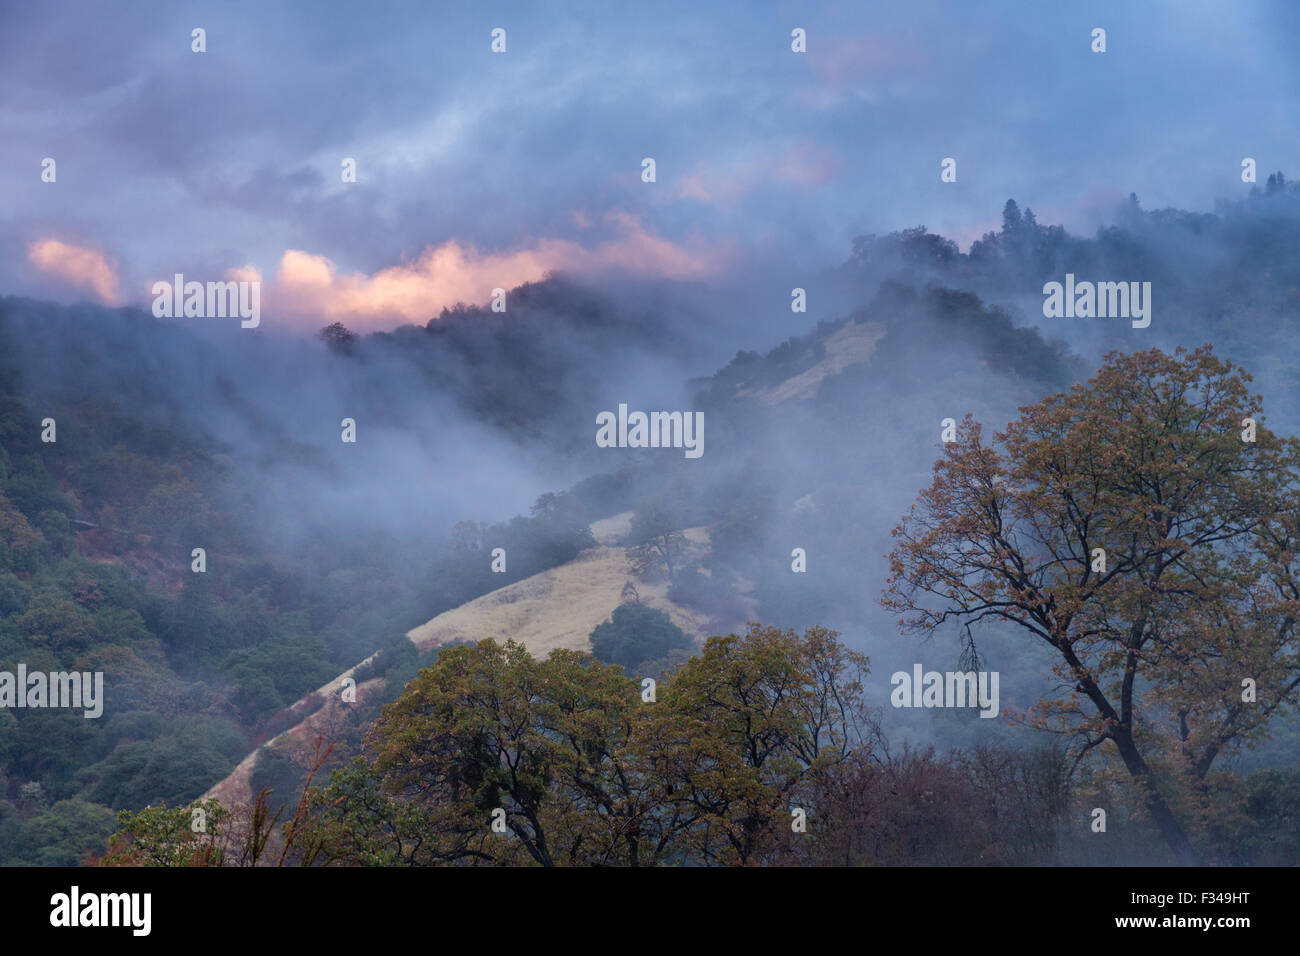 La nebbia dopo una doccia a pioggia nella valle Kaweah, Sequoia National Park, California, Stati Uniti d'America Foto Stock